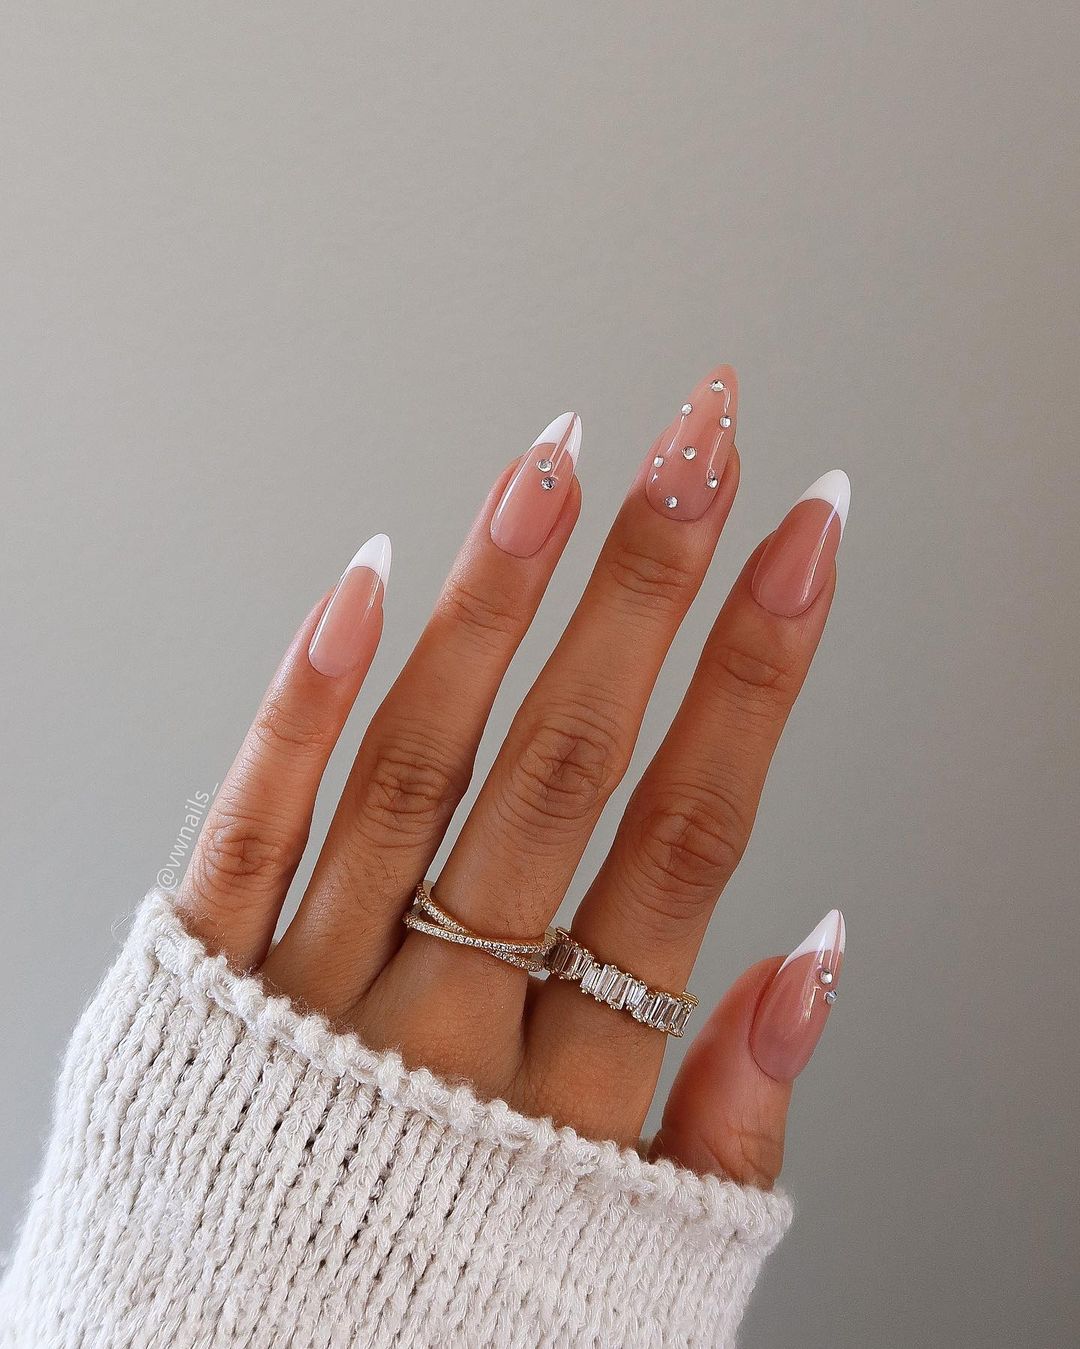 Soft White Nails